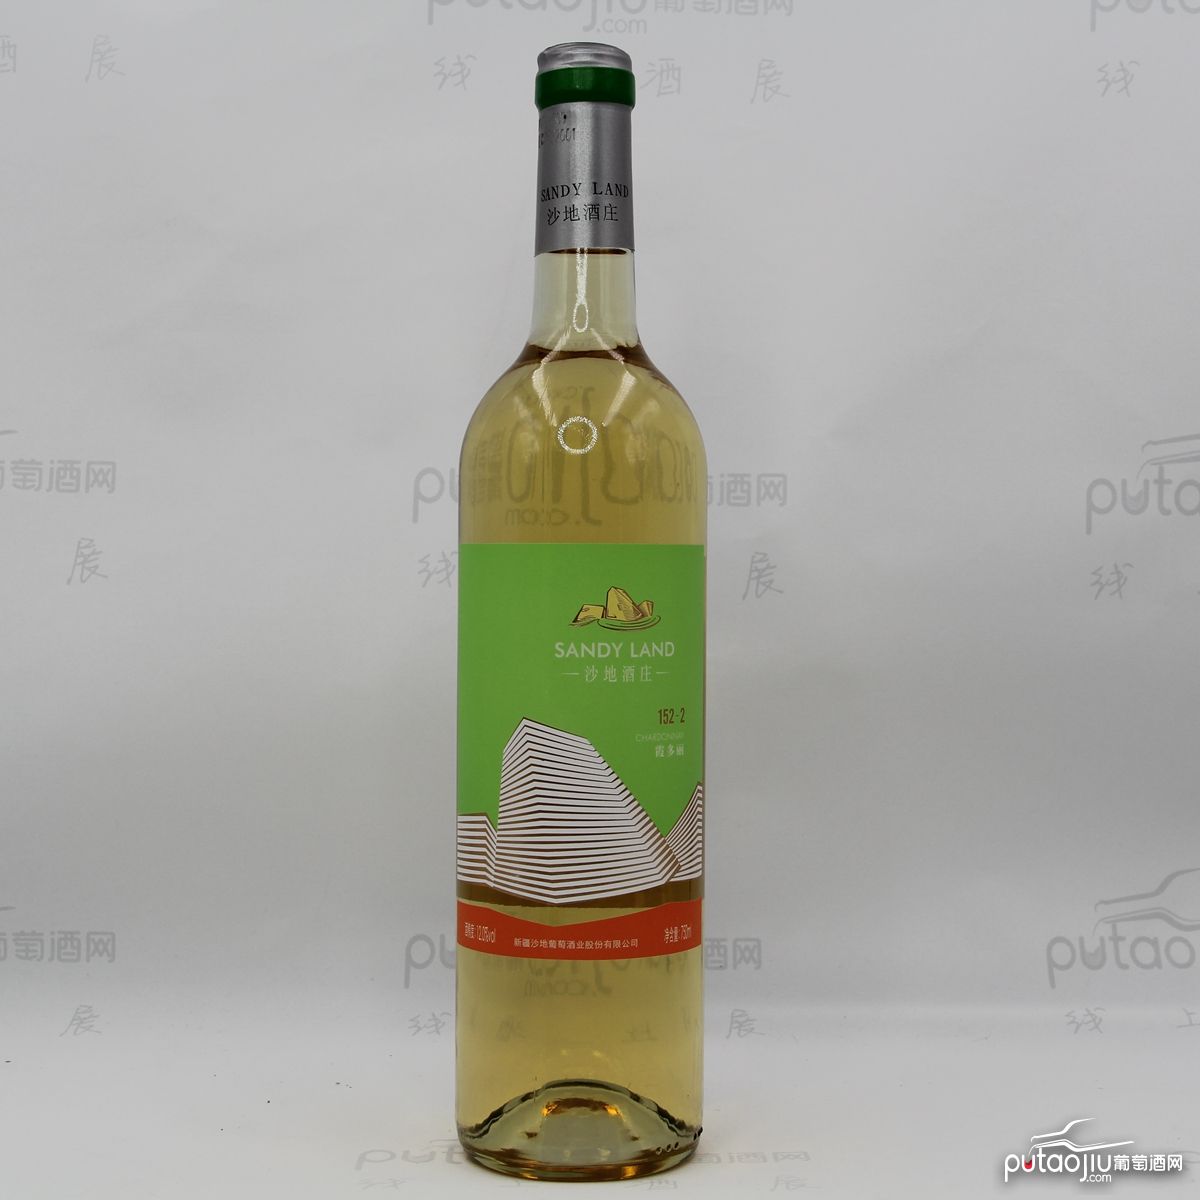 中国新疆产区沙地酒庄 霞多丽152-2干白葡萄酒